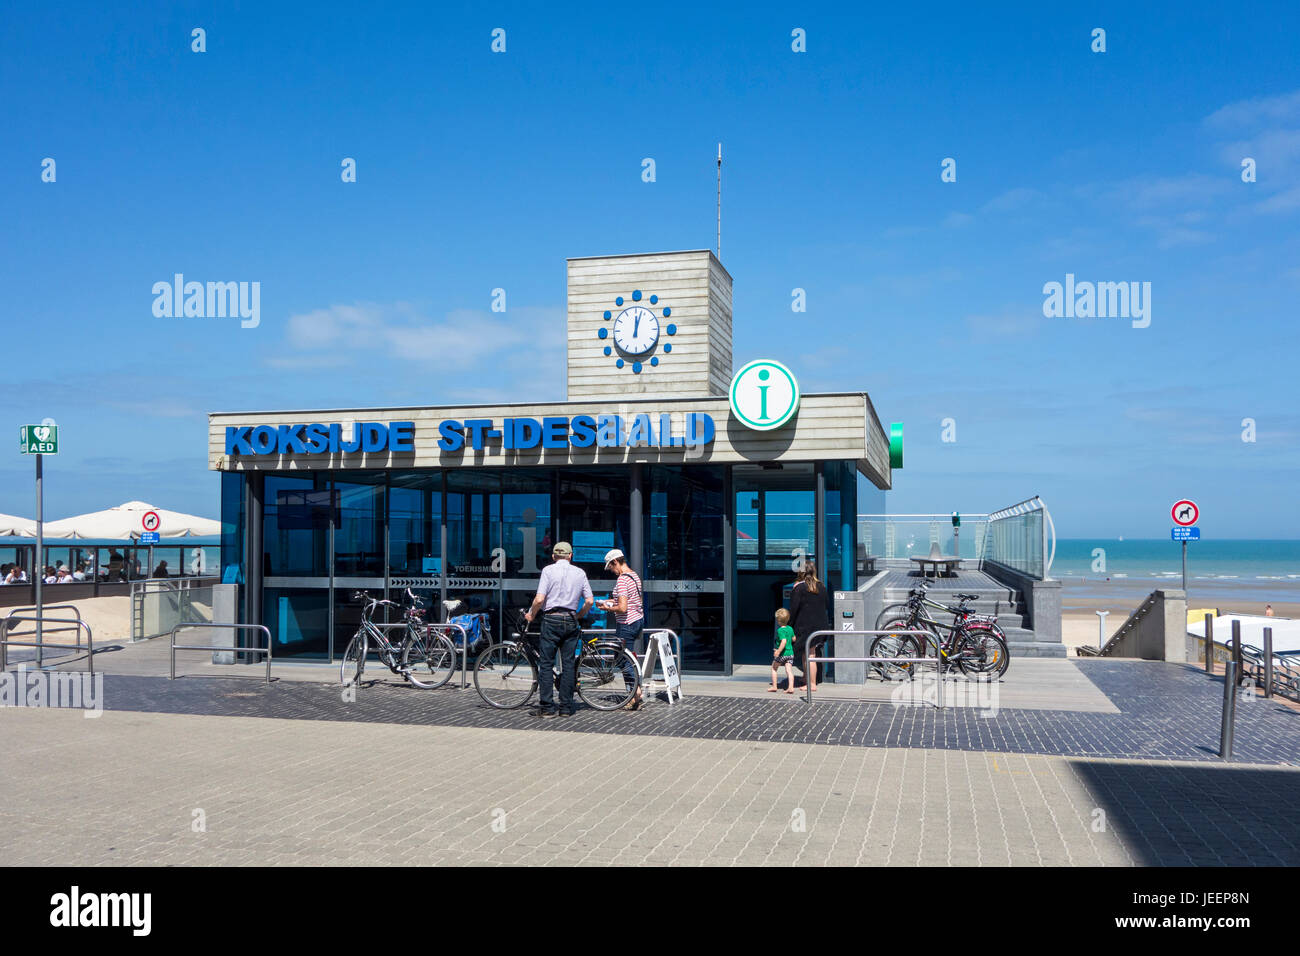 Les touristes avec des vélos en face de l'office de tourisme à Koksijde / Coxyde / St-Idesbald, station balnéaire de la côte de la mer du Nord, Flandre occidentale, Belgique Banque D'Images